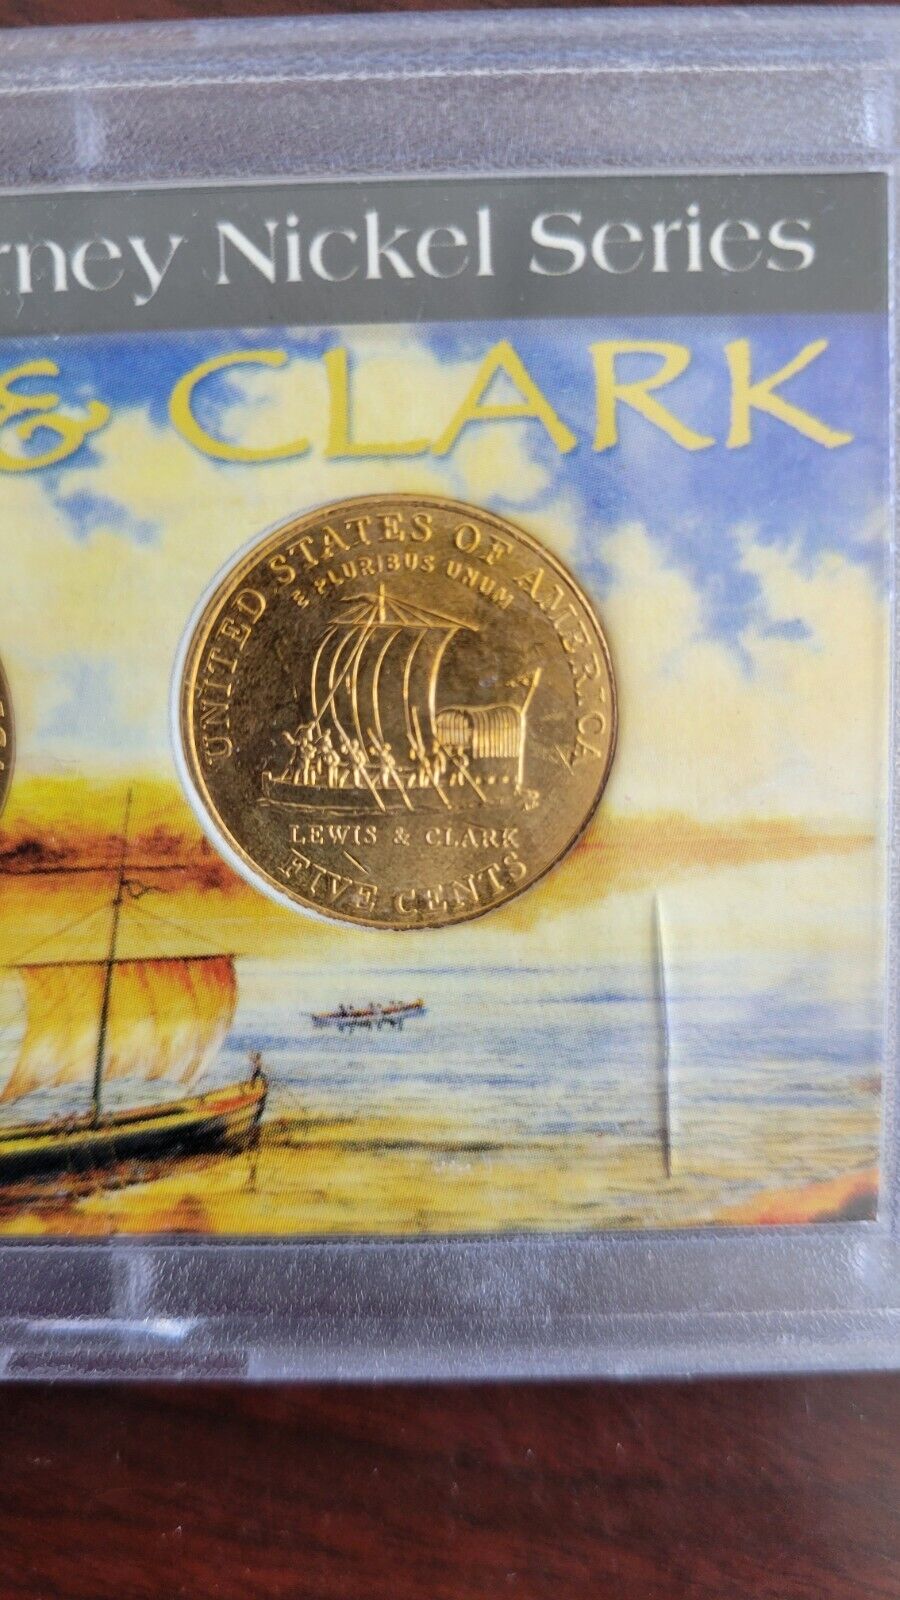 2004 Whitman Westward Journey Nickel Series Set Nickels Lewis & Clark Gold Tone